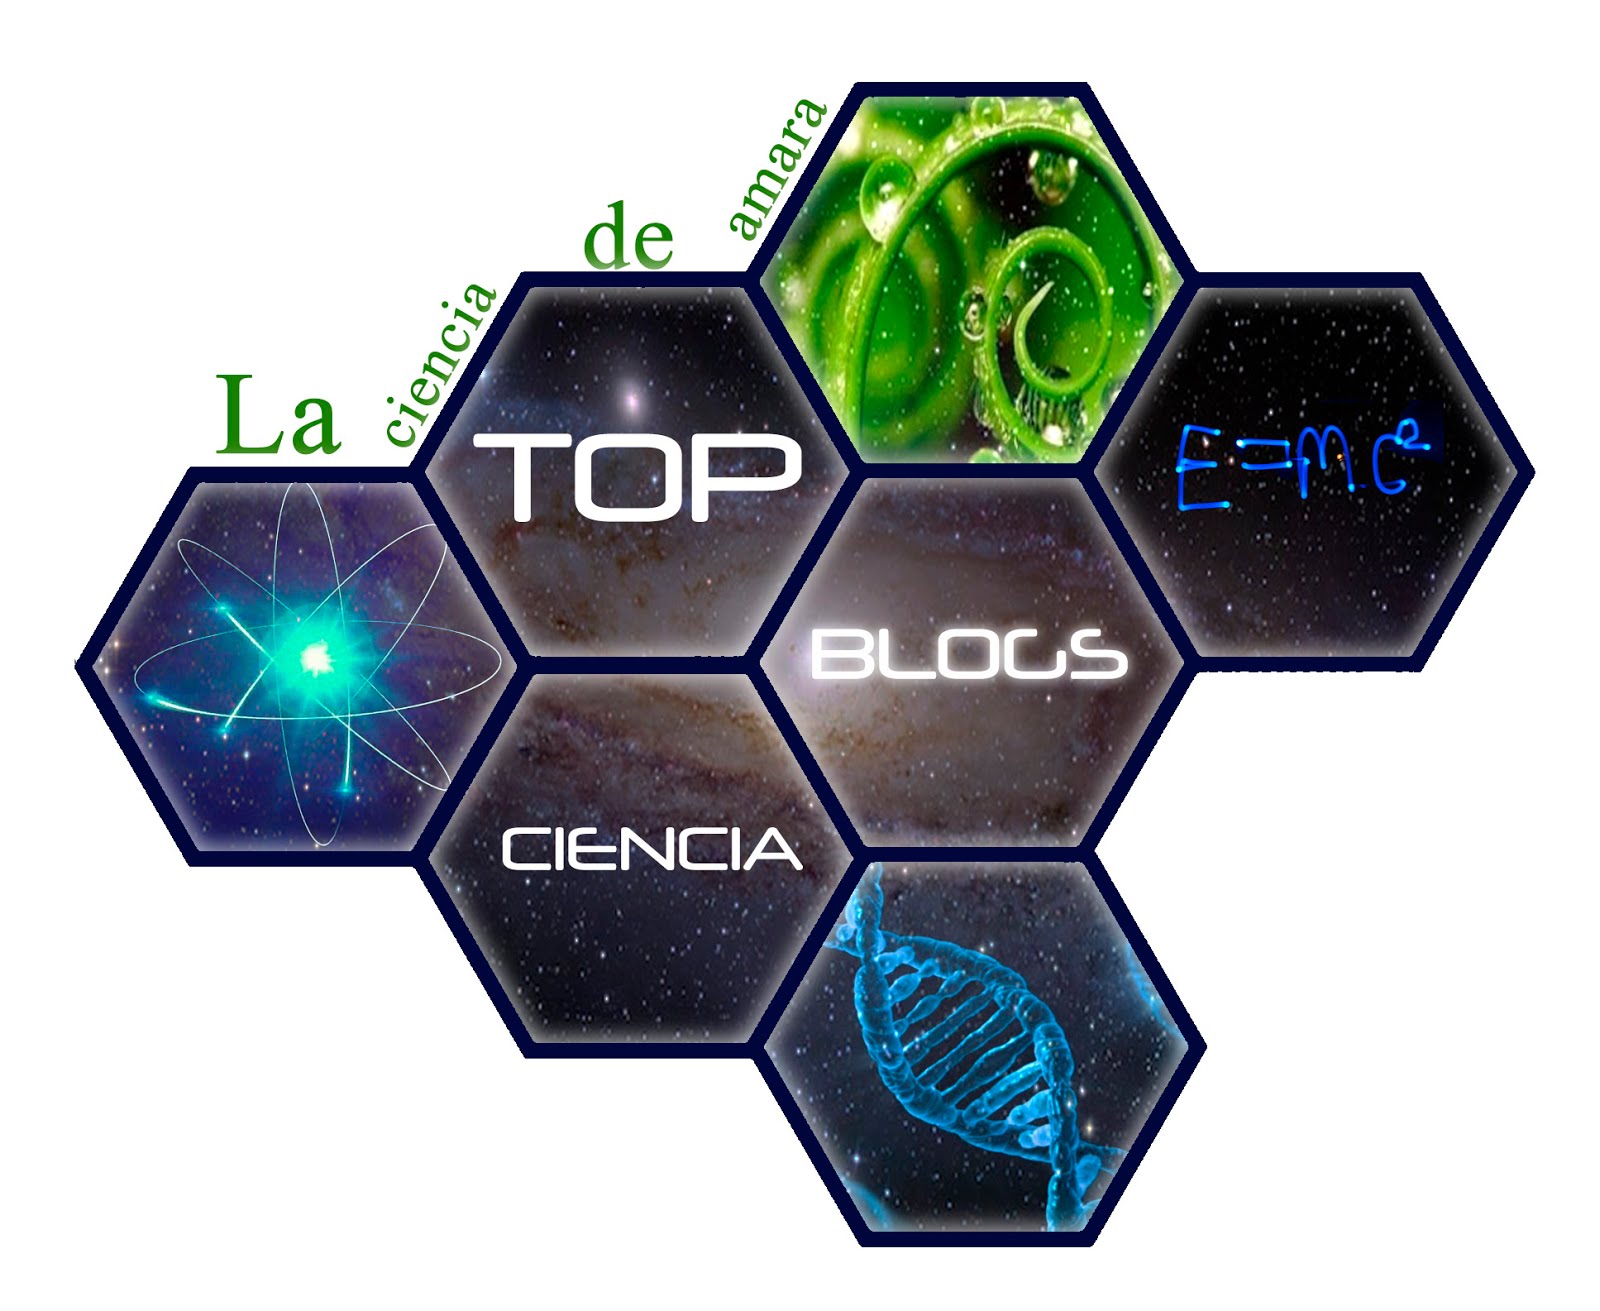 Top Blogs de Ciencia